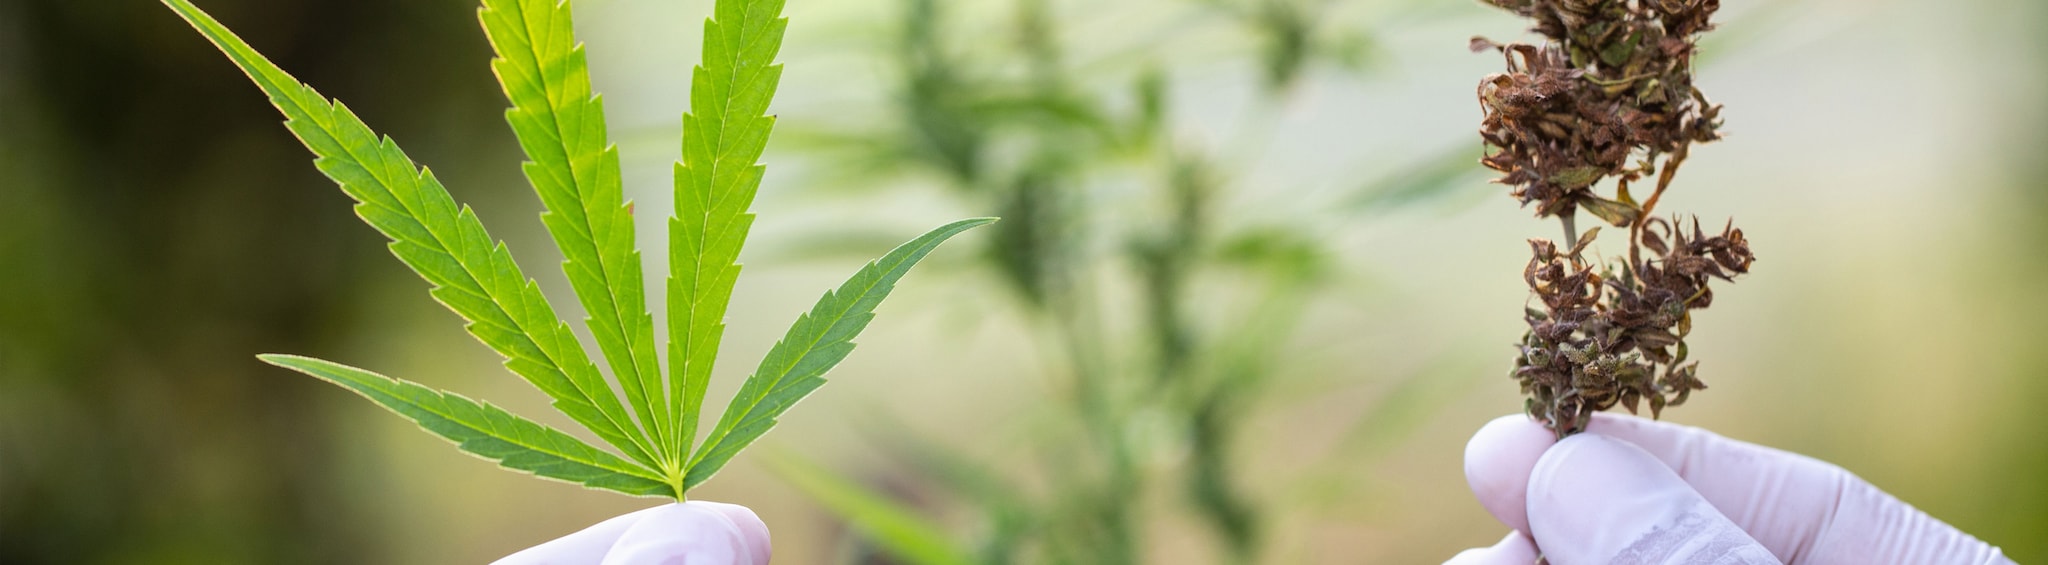 cannabis fan leaf and bud